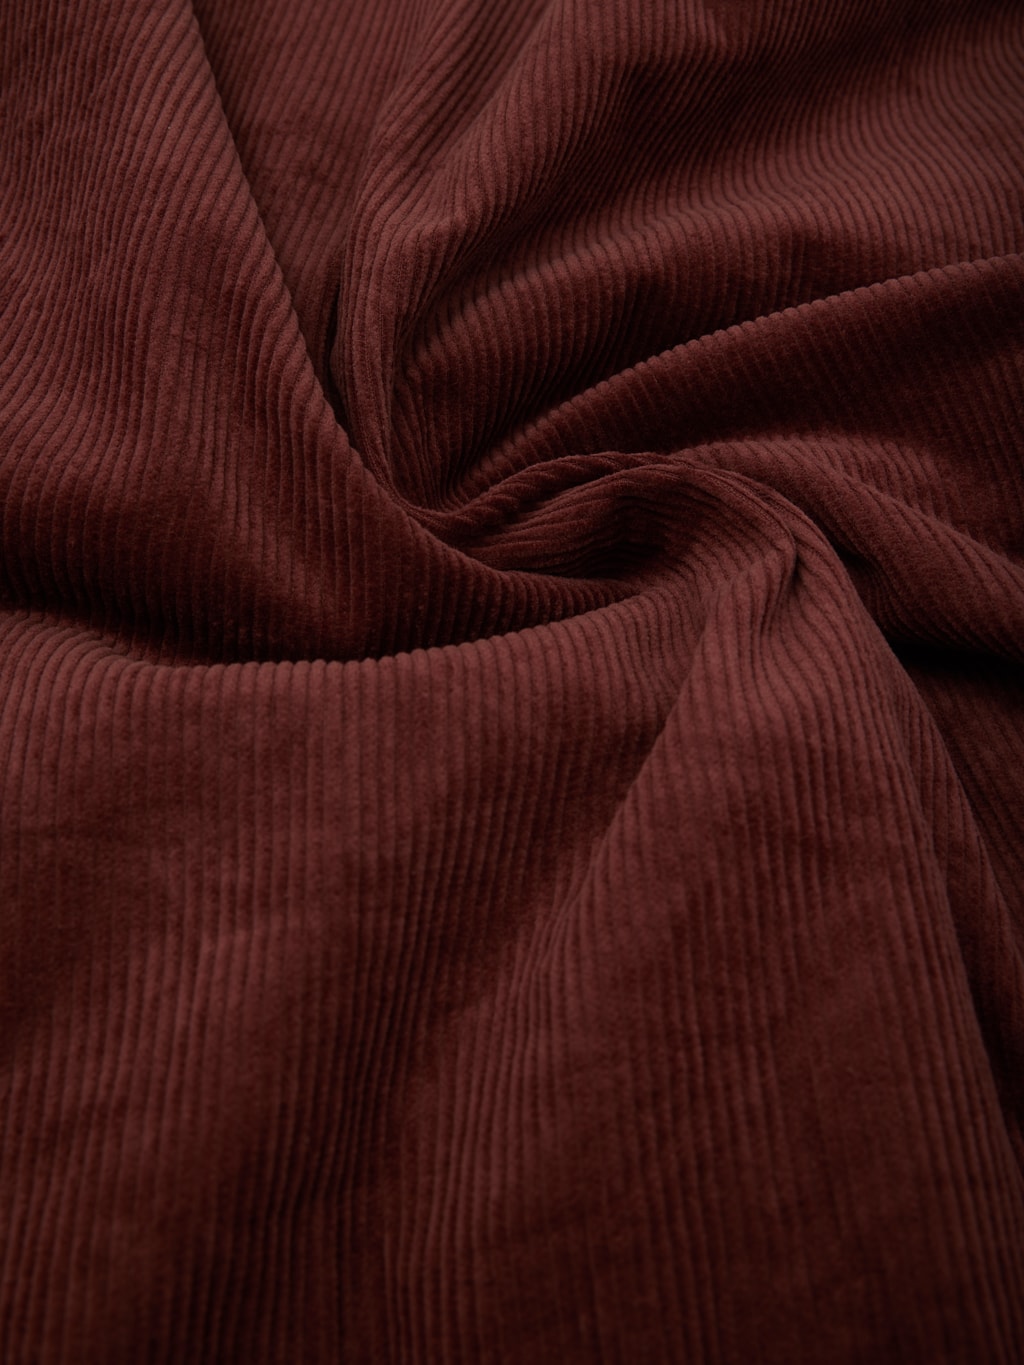 Tanuki Sazanami Corduro mud Dyed brown Jacket 100 cotton fabric